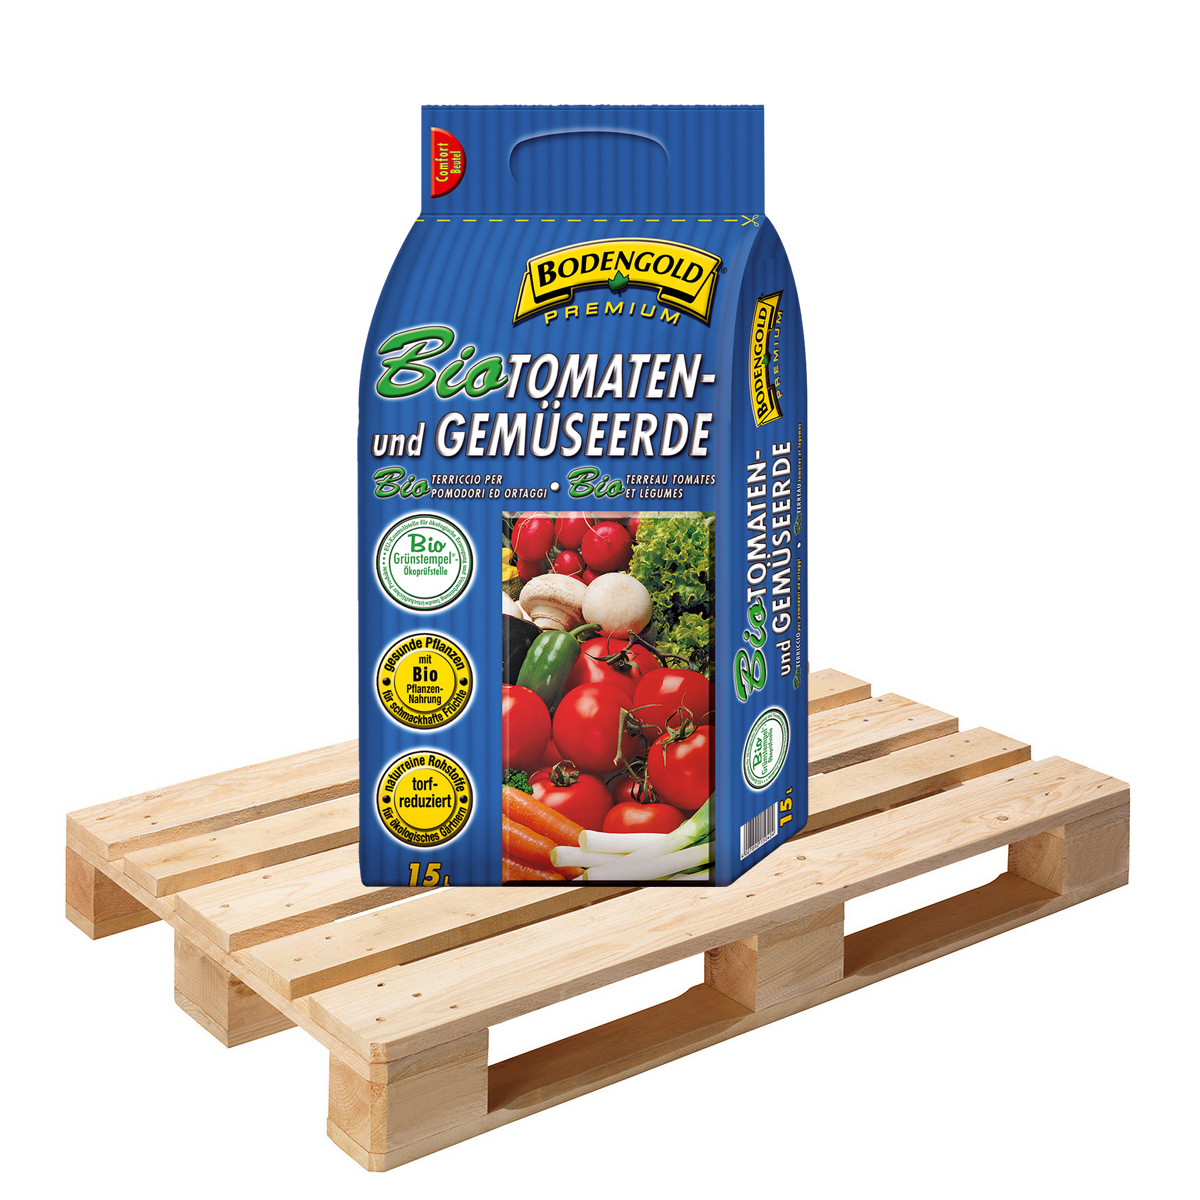 BIO Tomaten- & Gemüseerde Bodengold Premium 108 Sack á 15 Liter